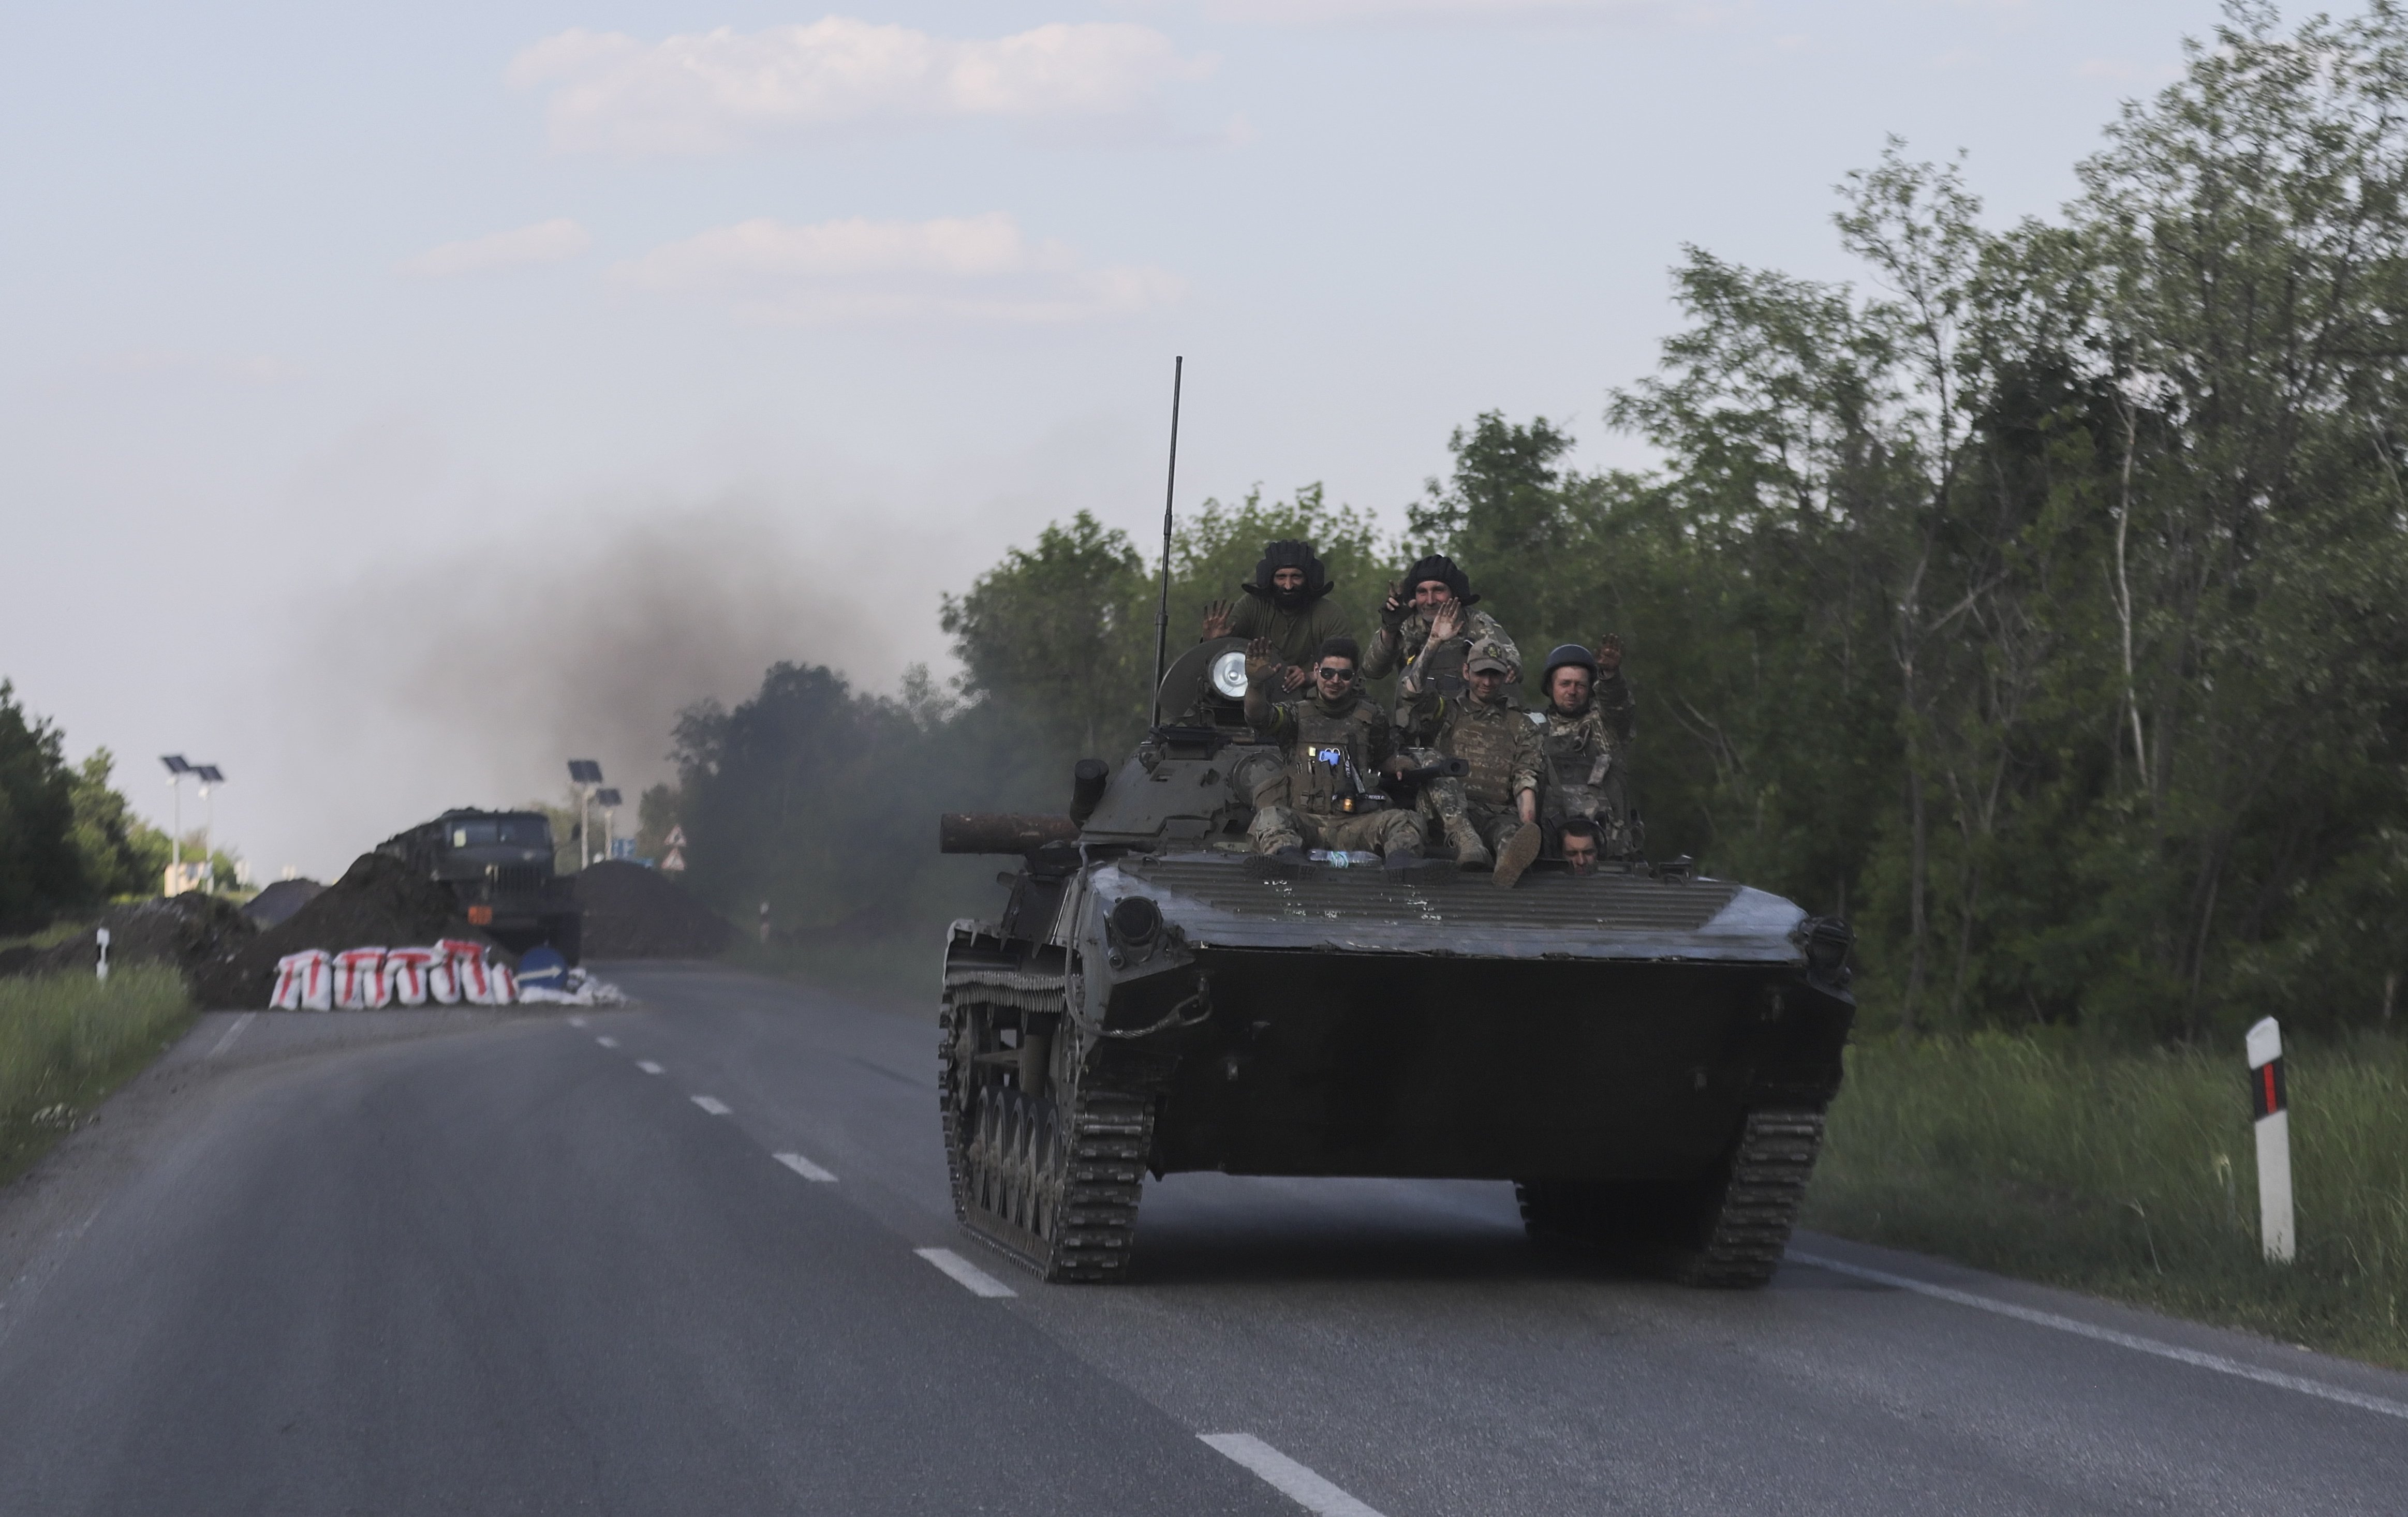 Quant falta perquè acabi la guerra d'Ucraïna, segons el ministre de Defensa britànic?